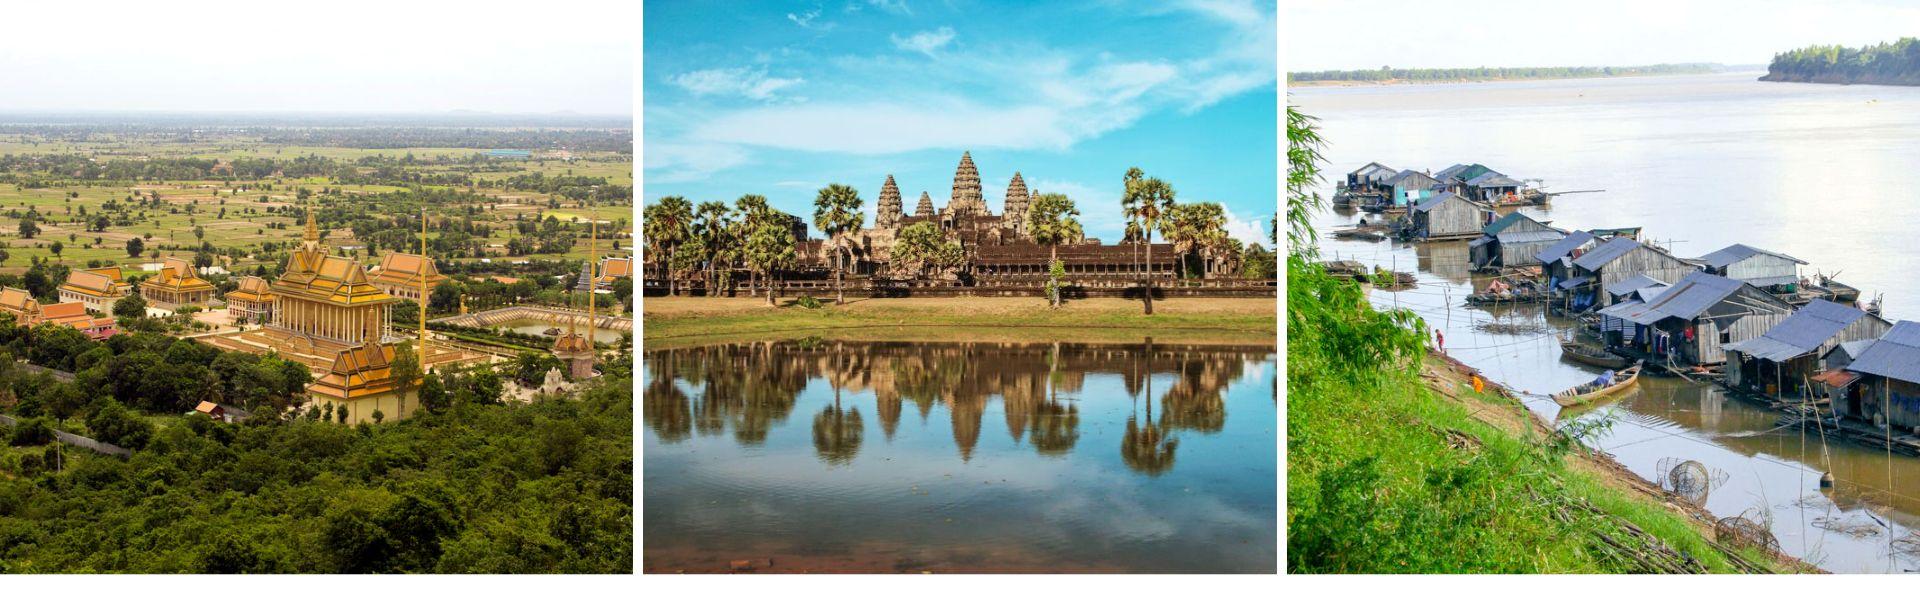 Alla scoperta della natura in Cambogia